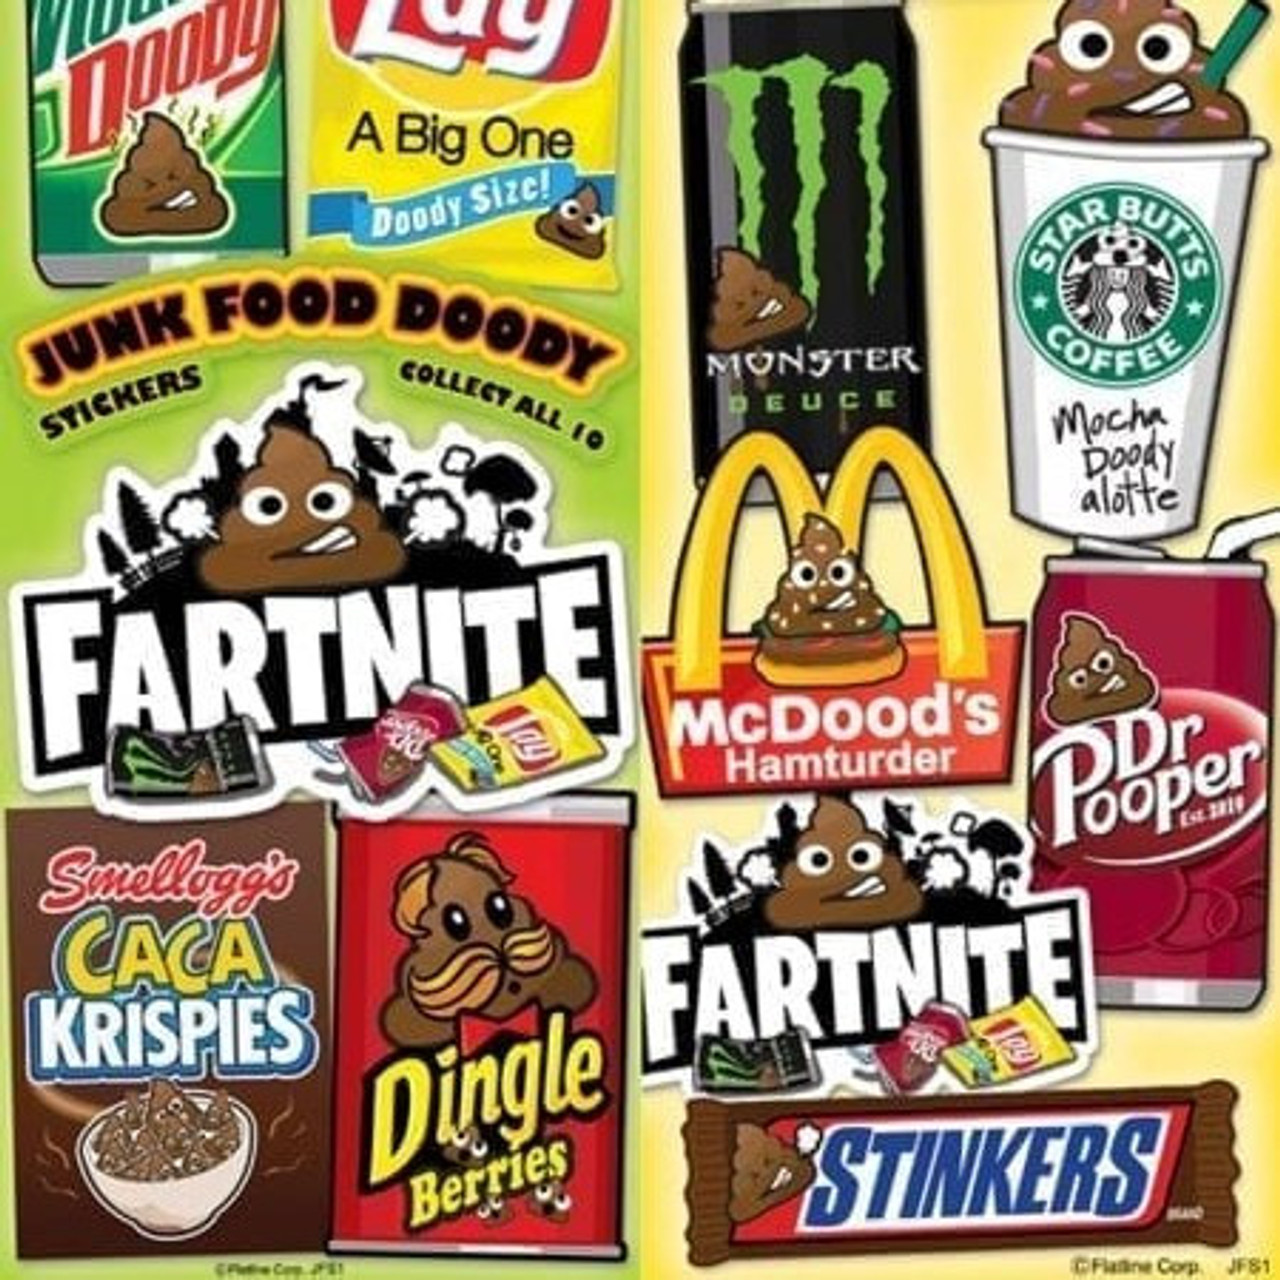 zo journalist werk Pun-doody Junk-foody #1 Stickers | Gumballs.com